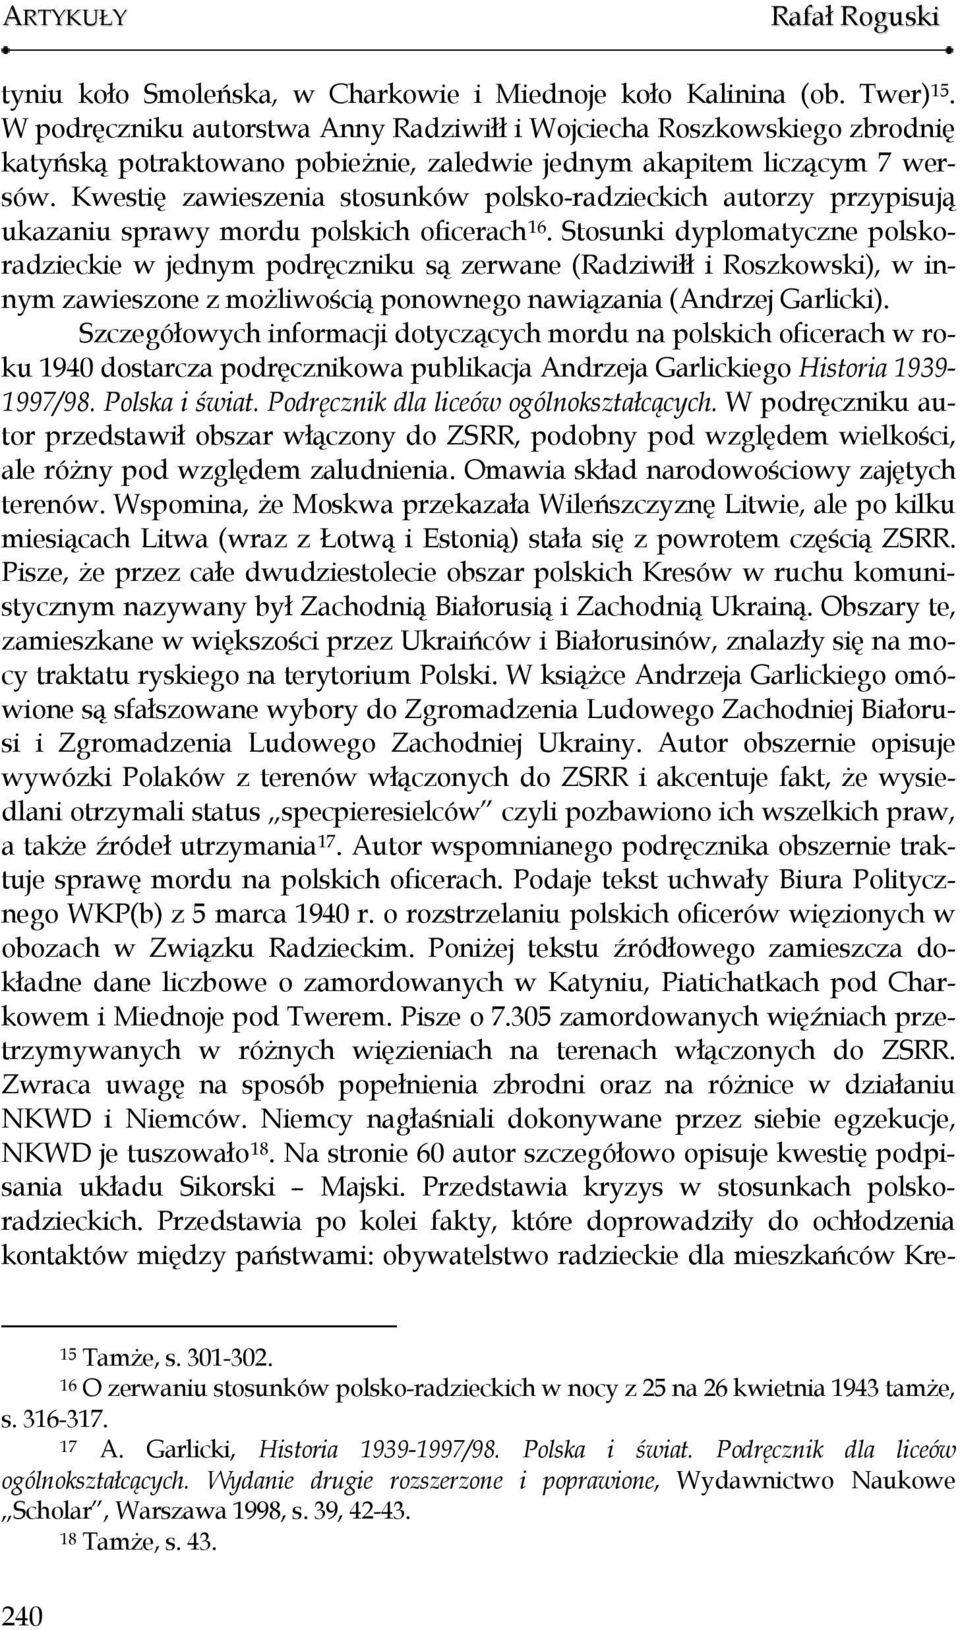 Kwestię zawieszenia stosunków polsko-radzieckich autorzy przypisują ukazaniu sprawy mordu polskich oficerach 16.